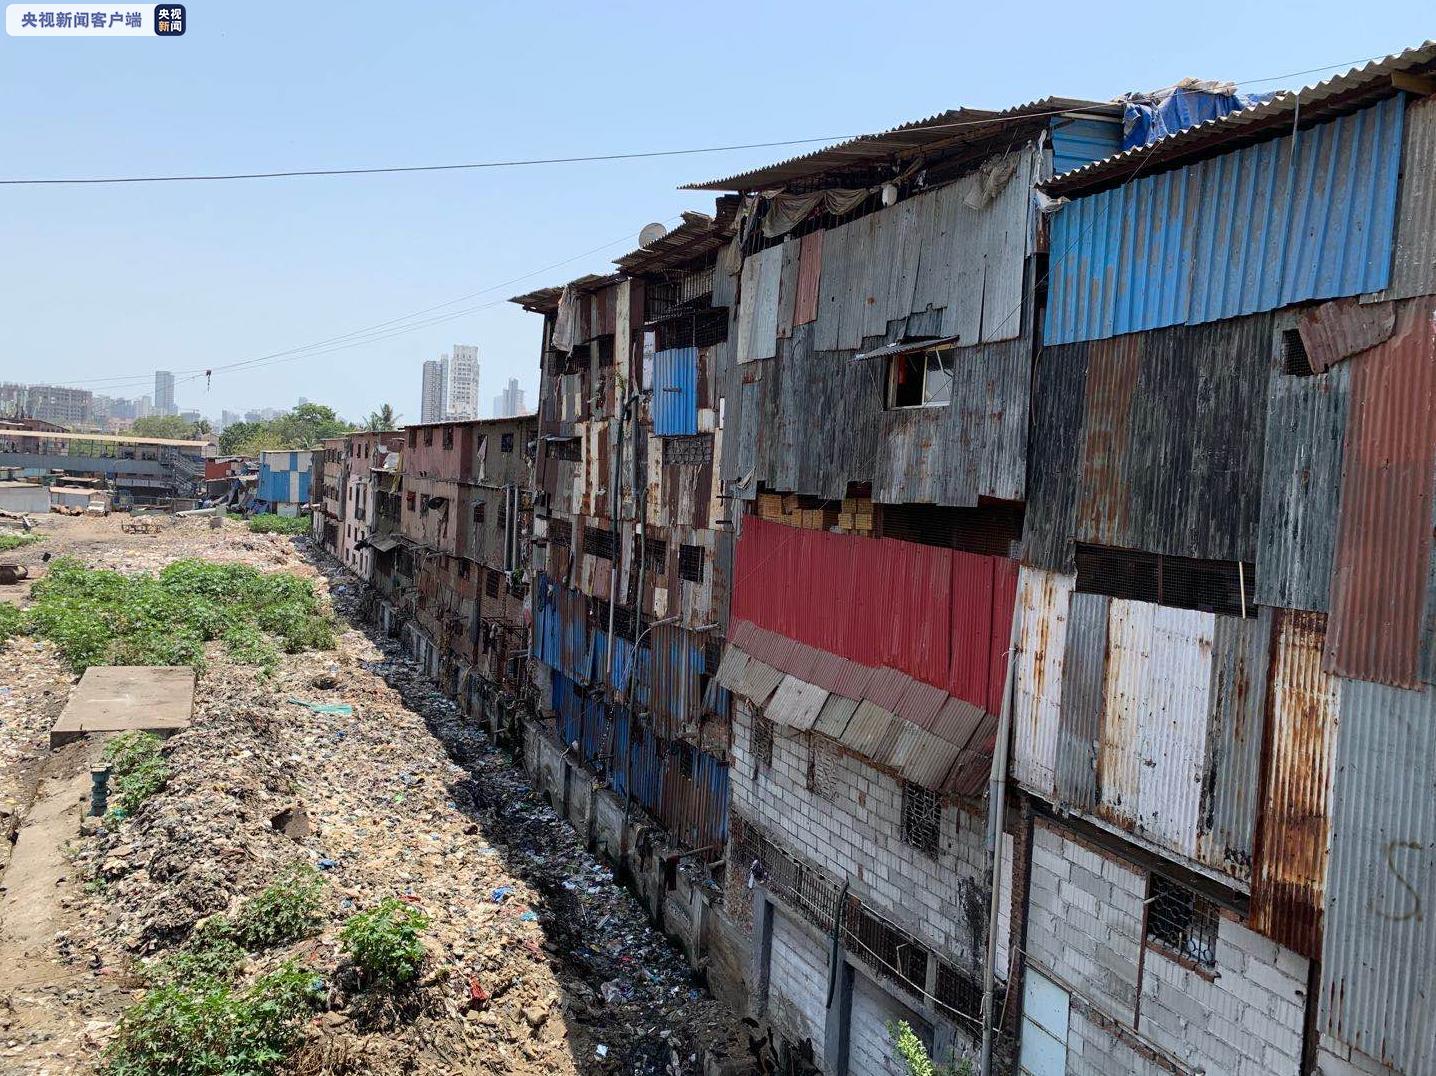 印度最大贫民窟新增25例确诊 累计确诊214例